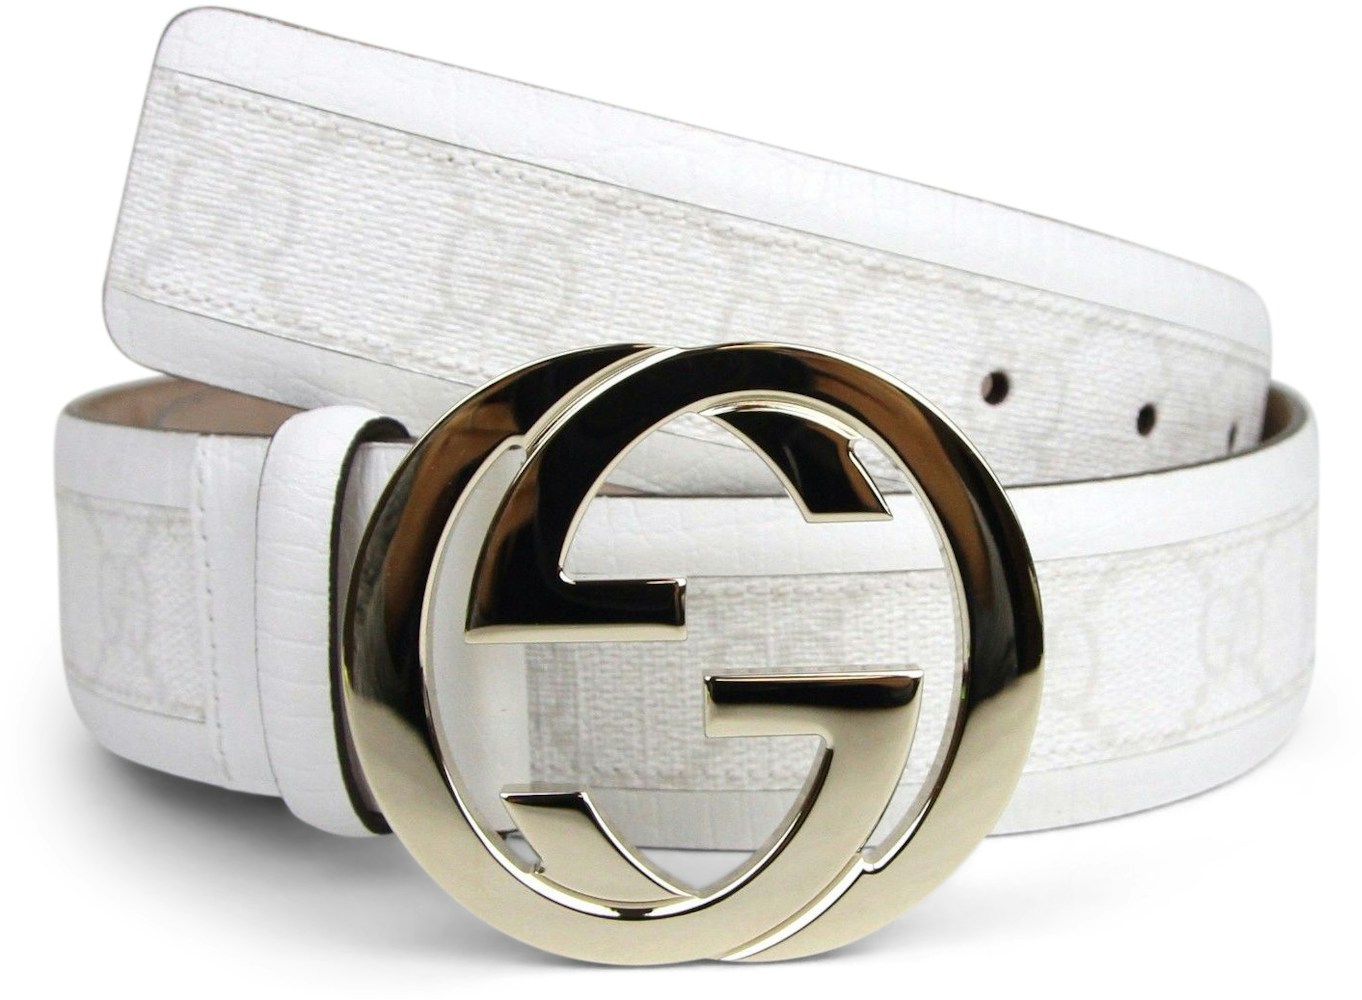 slap af Asser I detaljer Gucci Belt Monogram GG White/Off White in Canvas Leather with Light  Gold-tone